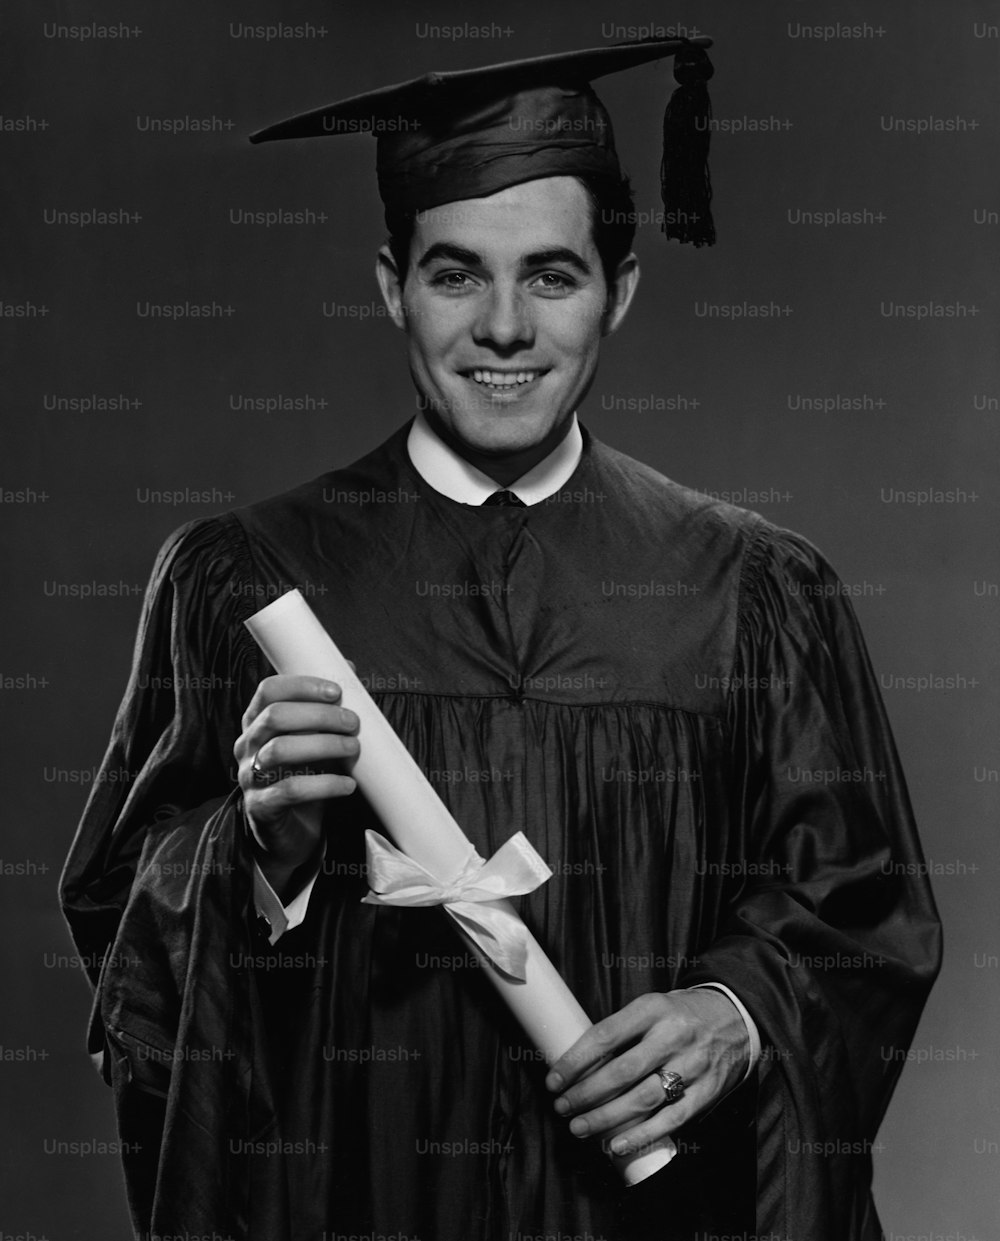 卒業式のガウンとモルタルボードを身にまとい、卒業証書を手にした青年、1960年頃。(写真提供:George Marks/Retrofile/Getty Images)